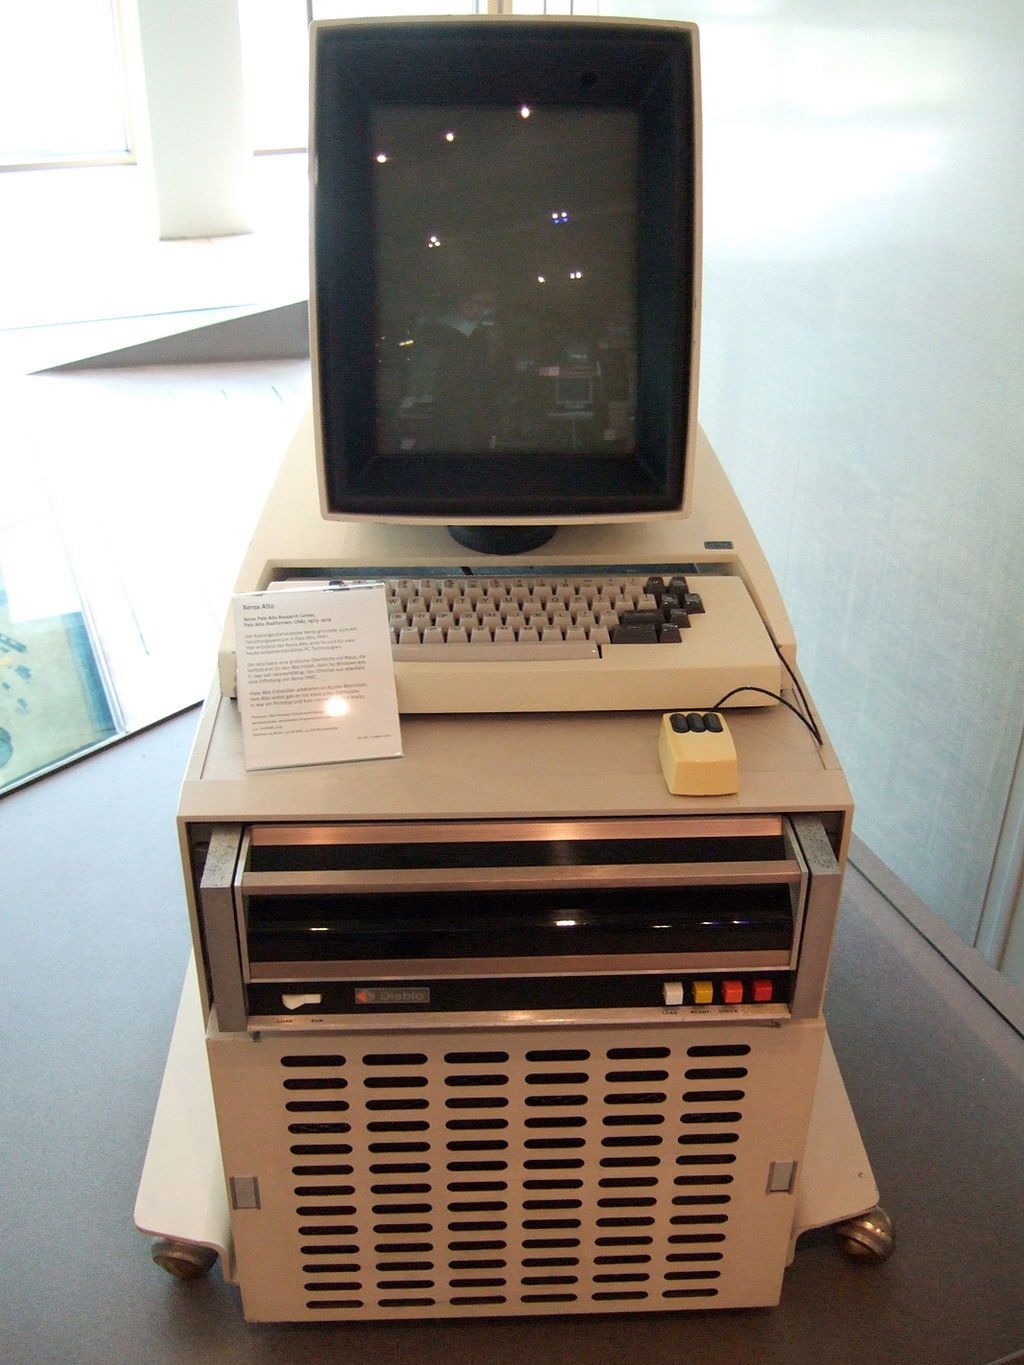 Wizjonerski Xerox Alto z pionowym monitorem i... myszką